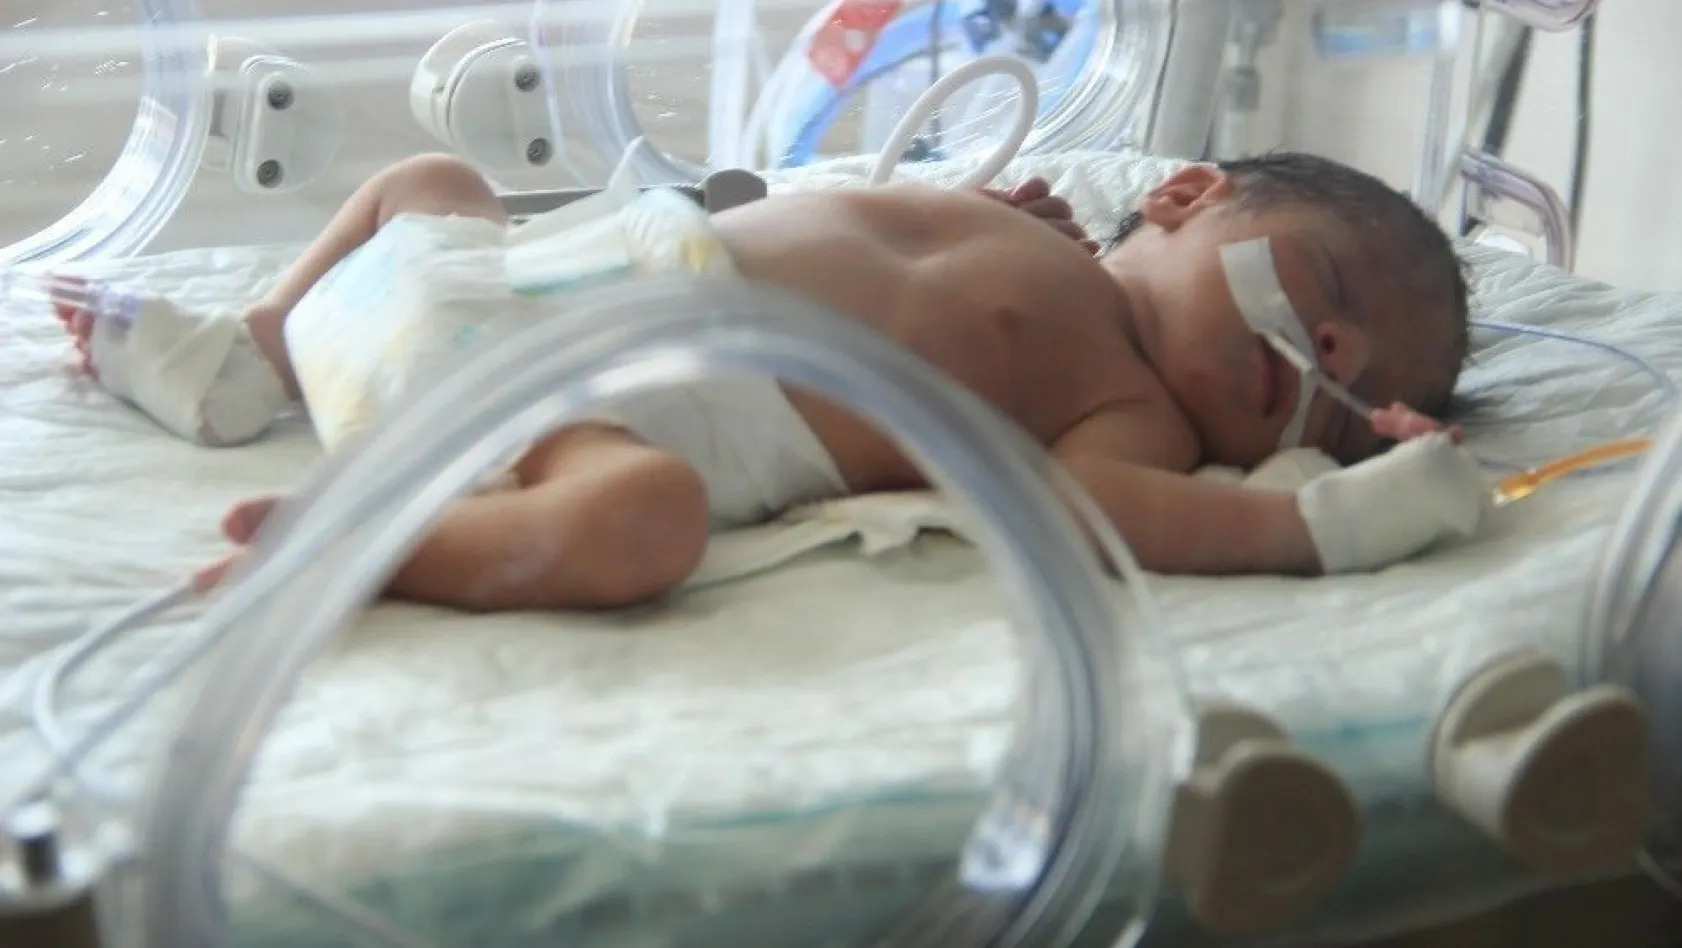 Öldürülen annesinin karnından alınan bebek Erzurum'da tedavi altında
